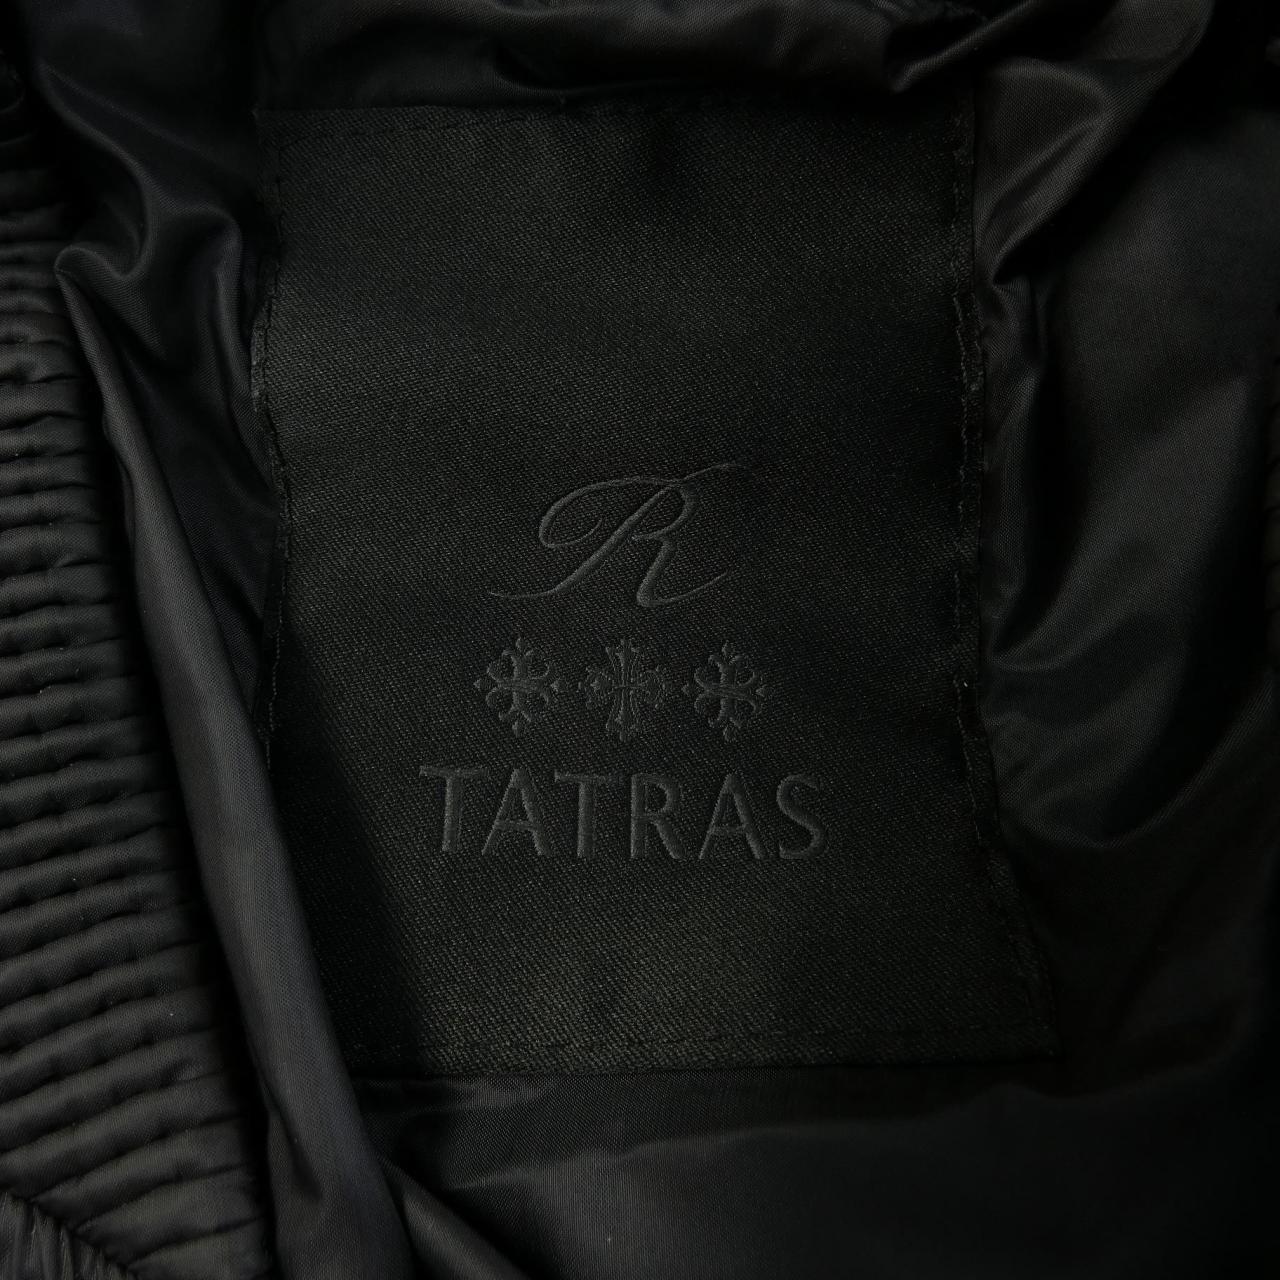 Tatras TATRAS blouson